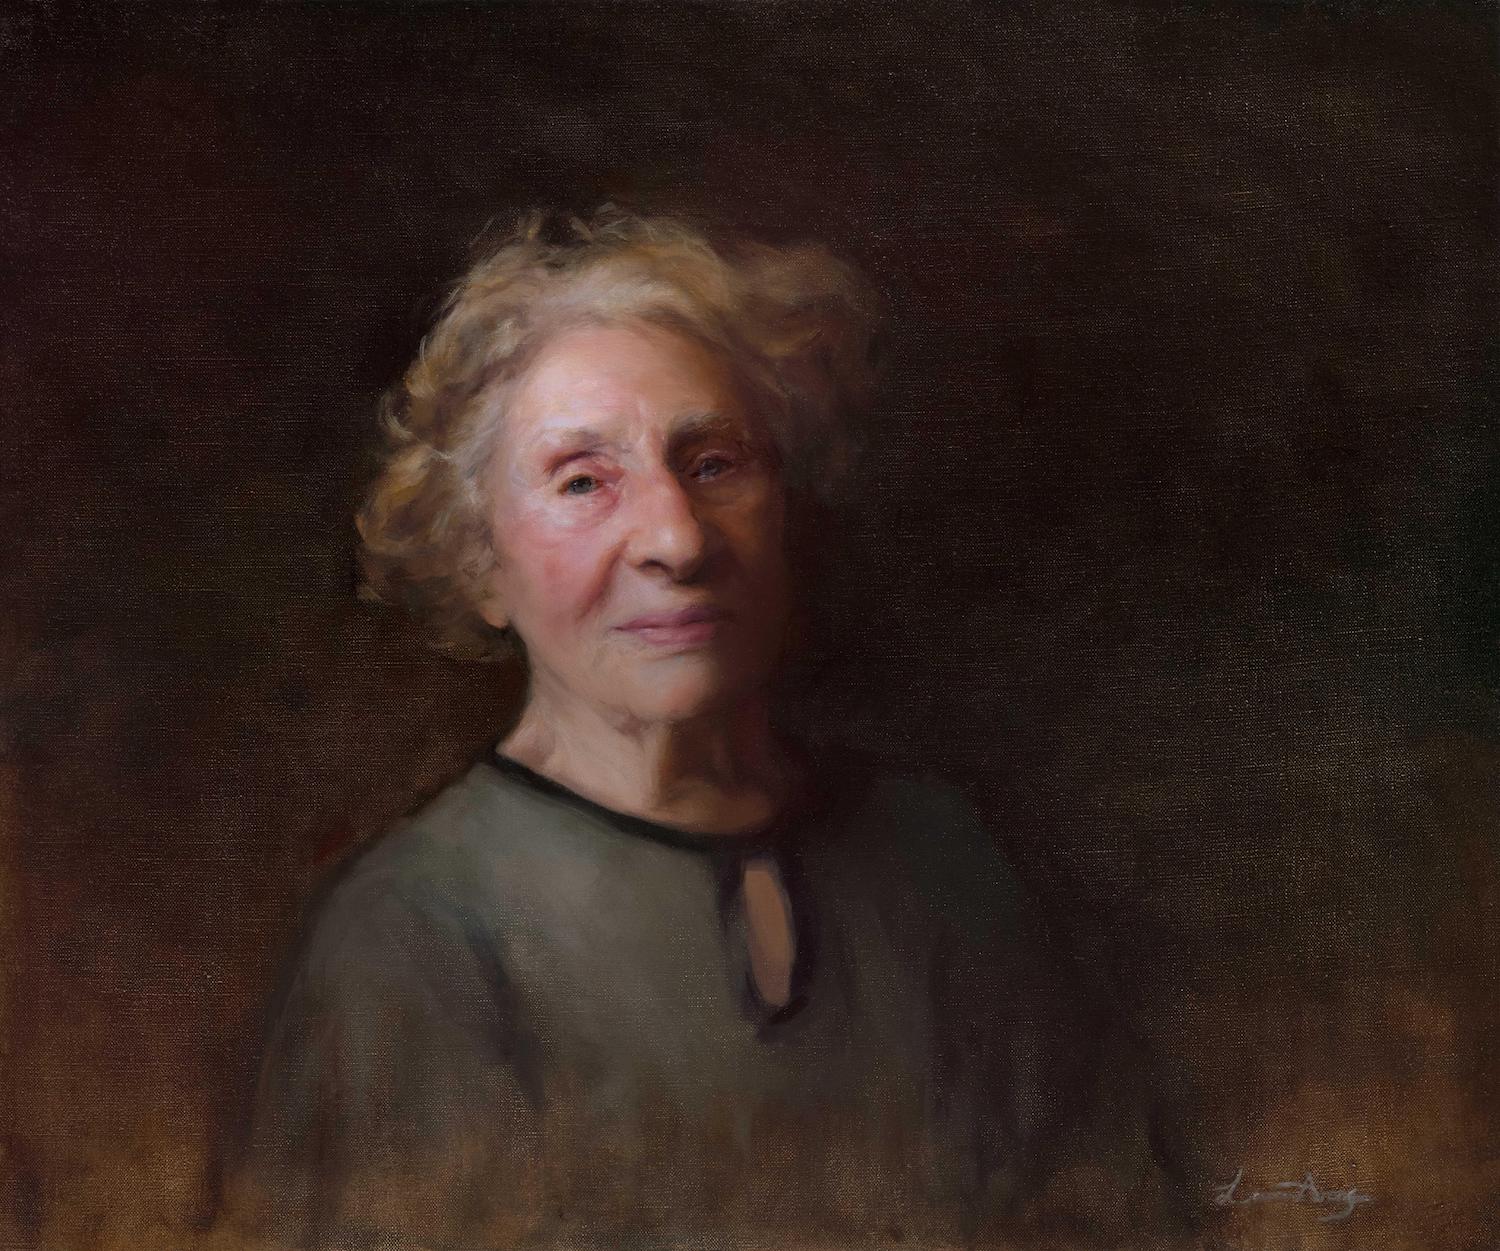 Portrait of Susan Pollack, survivor of Auschwitz Birkenau by portrait painter Laura Arenson